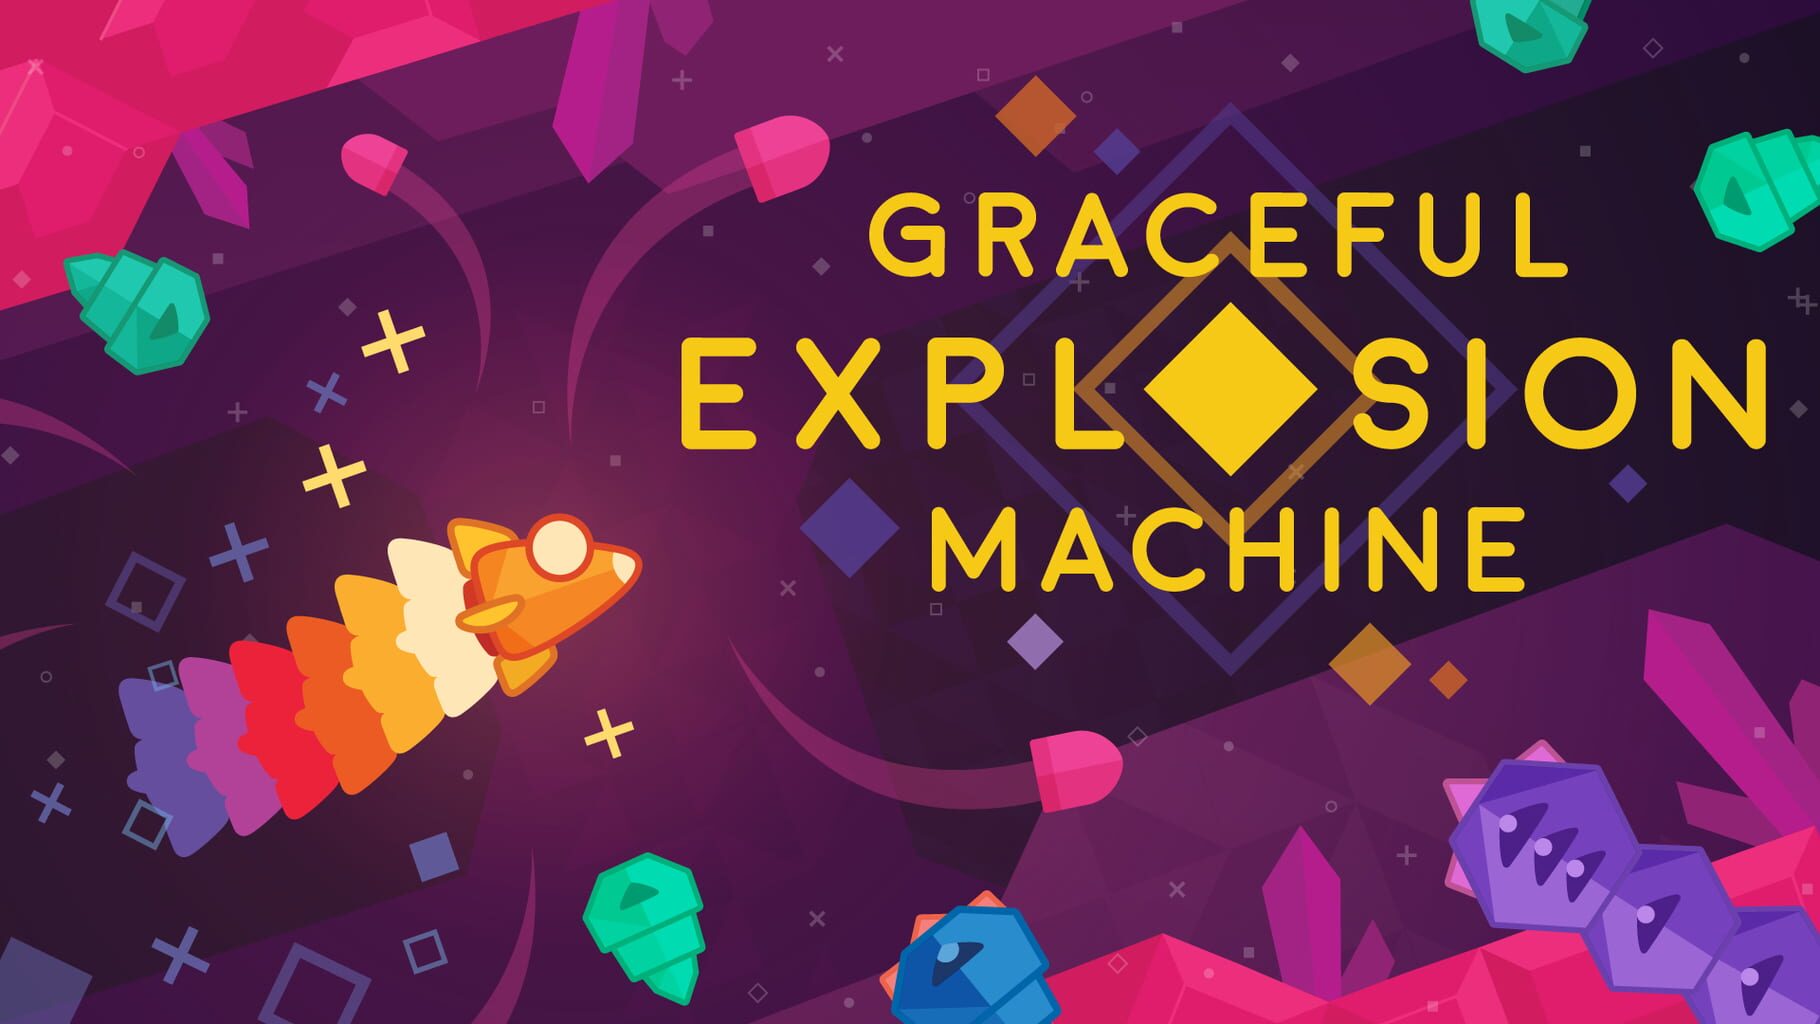 Arte - Graceful Explosion Machine